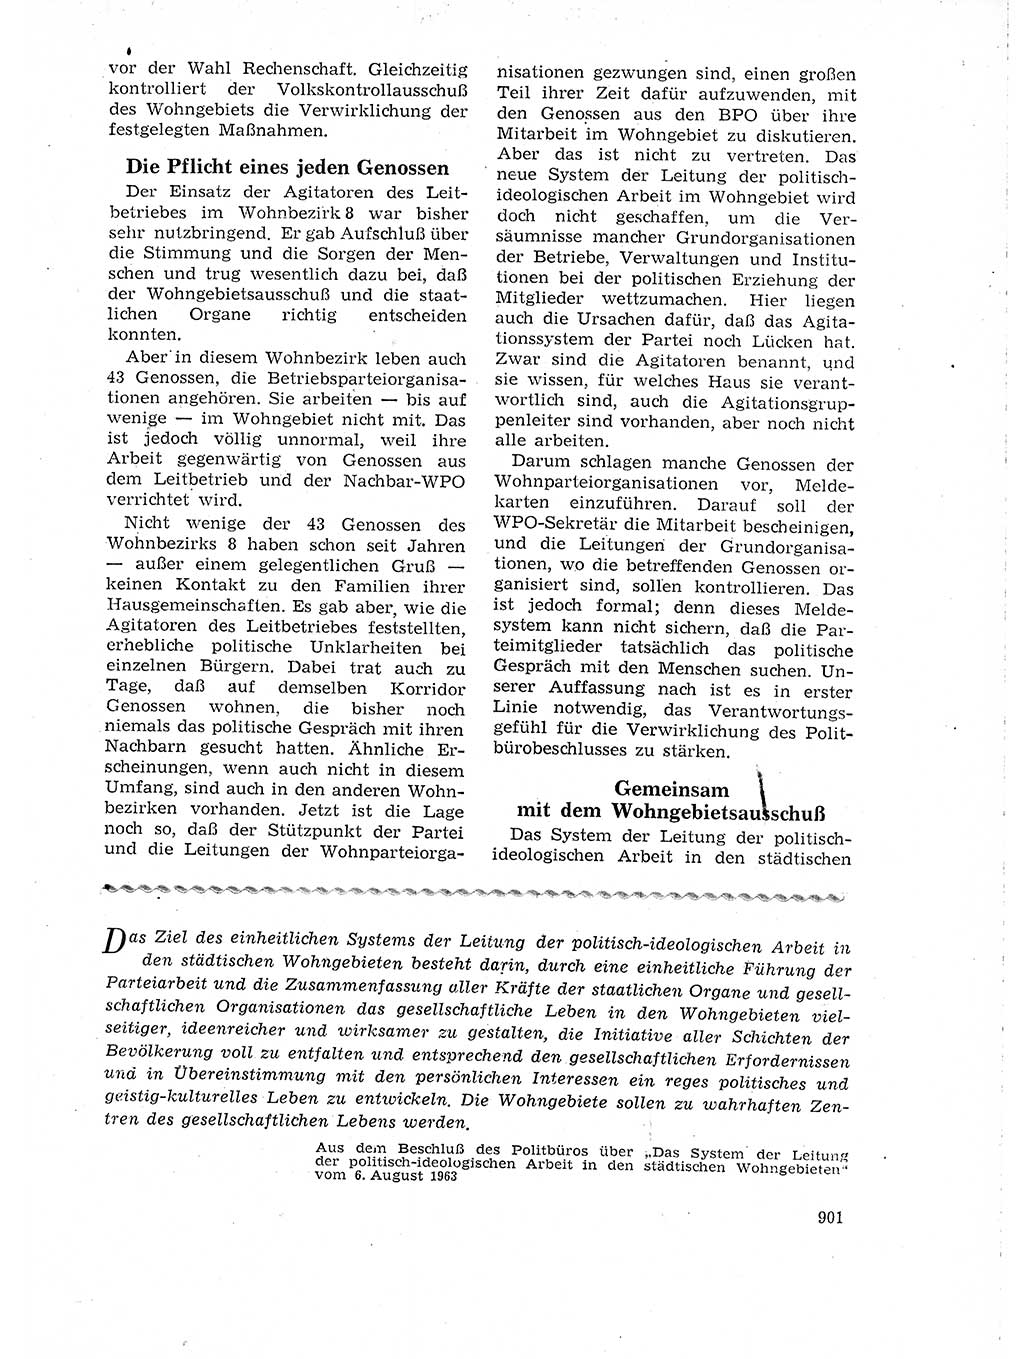 Neuer Weg (NW), Organ des Zentralkomitees (ZK) der SED (Sozialistische Einheitspartei Deutschlands) für Fragen des Parteilebens, 18. Jahrgang [Deutsche Demokratische Republik (DDR)] 1963, Seite 901 (NW ZK SED DDR 1963, S. 901)